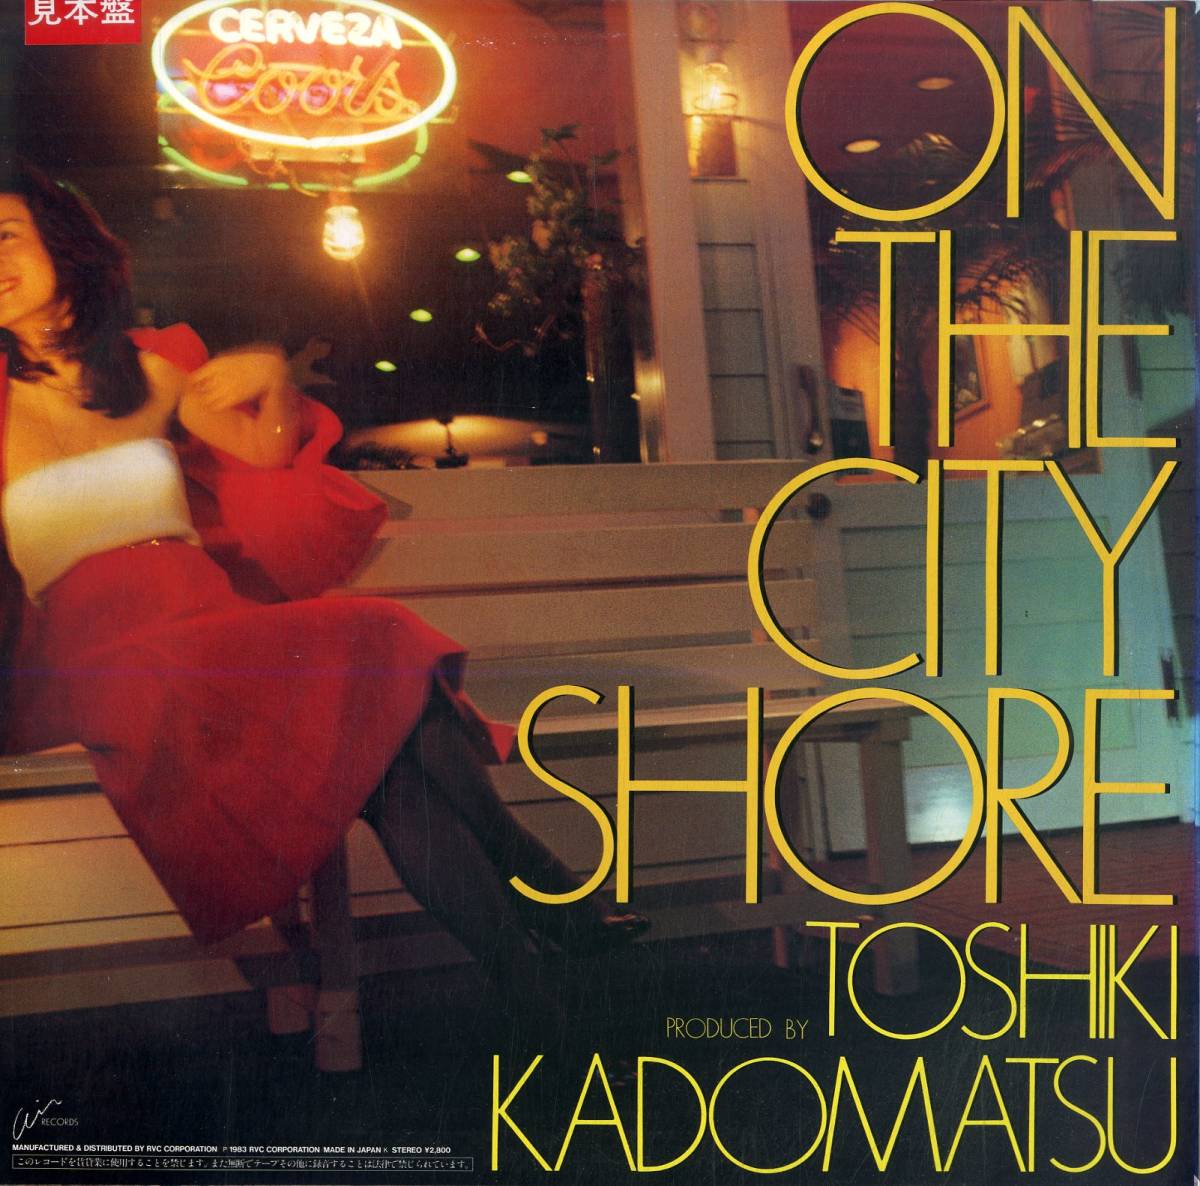 A00582221/LP/角松敏生「On The City Shore (1983年・RAL-8805・ディスコ・DISCO・ソウル・SOUL・ファンク・FUNK・ライトメロウ)」_画像2